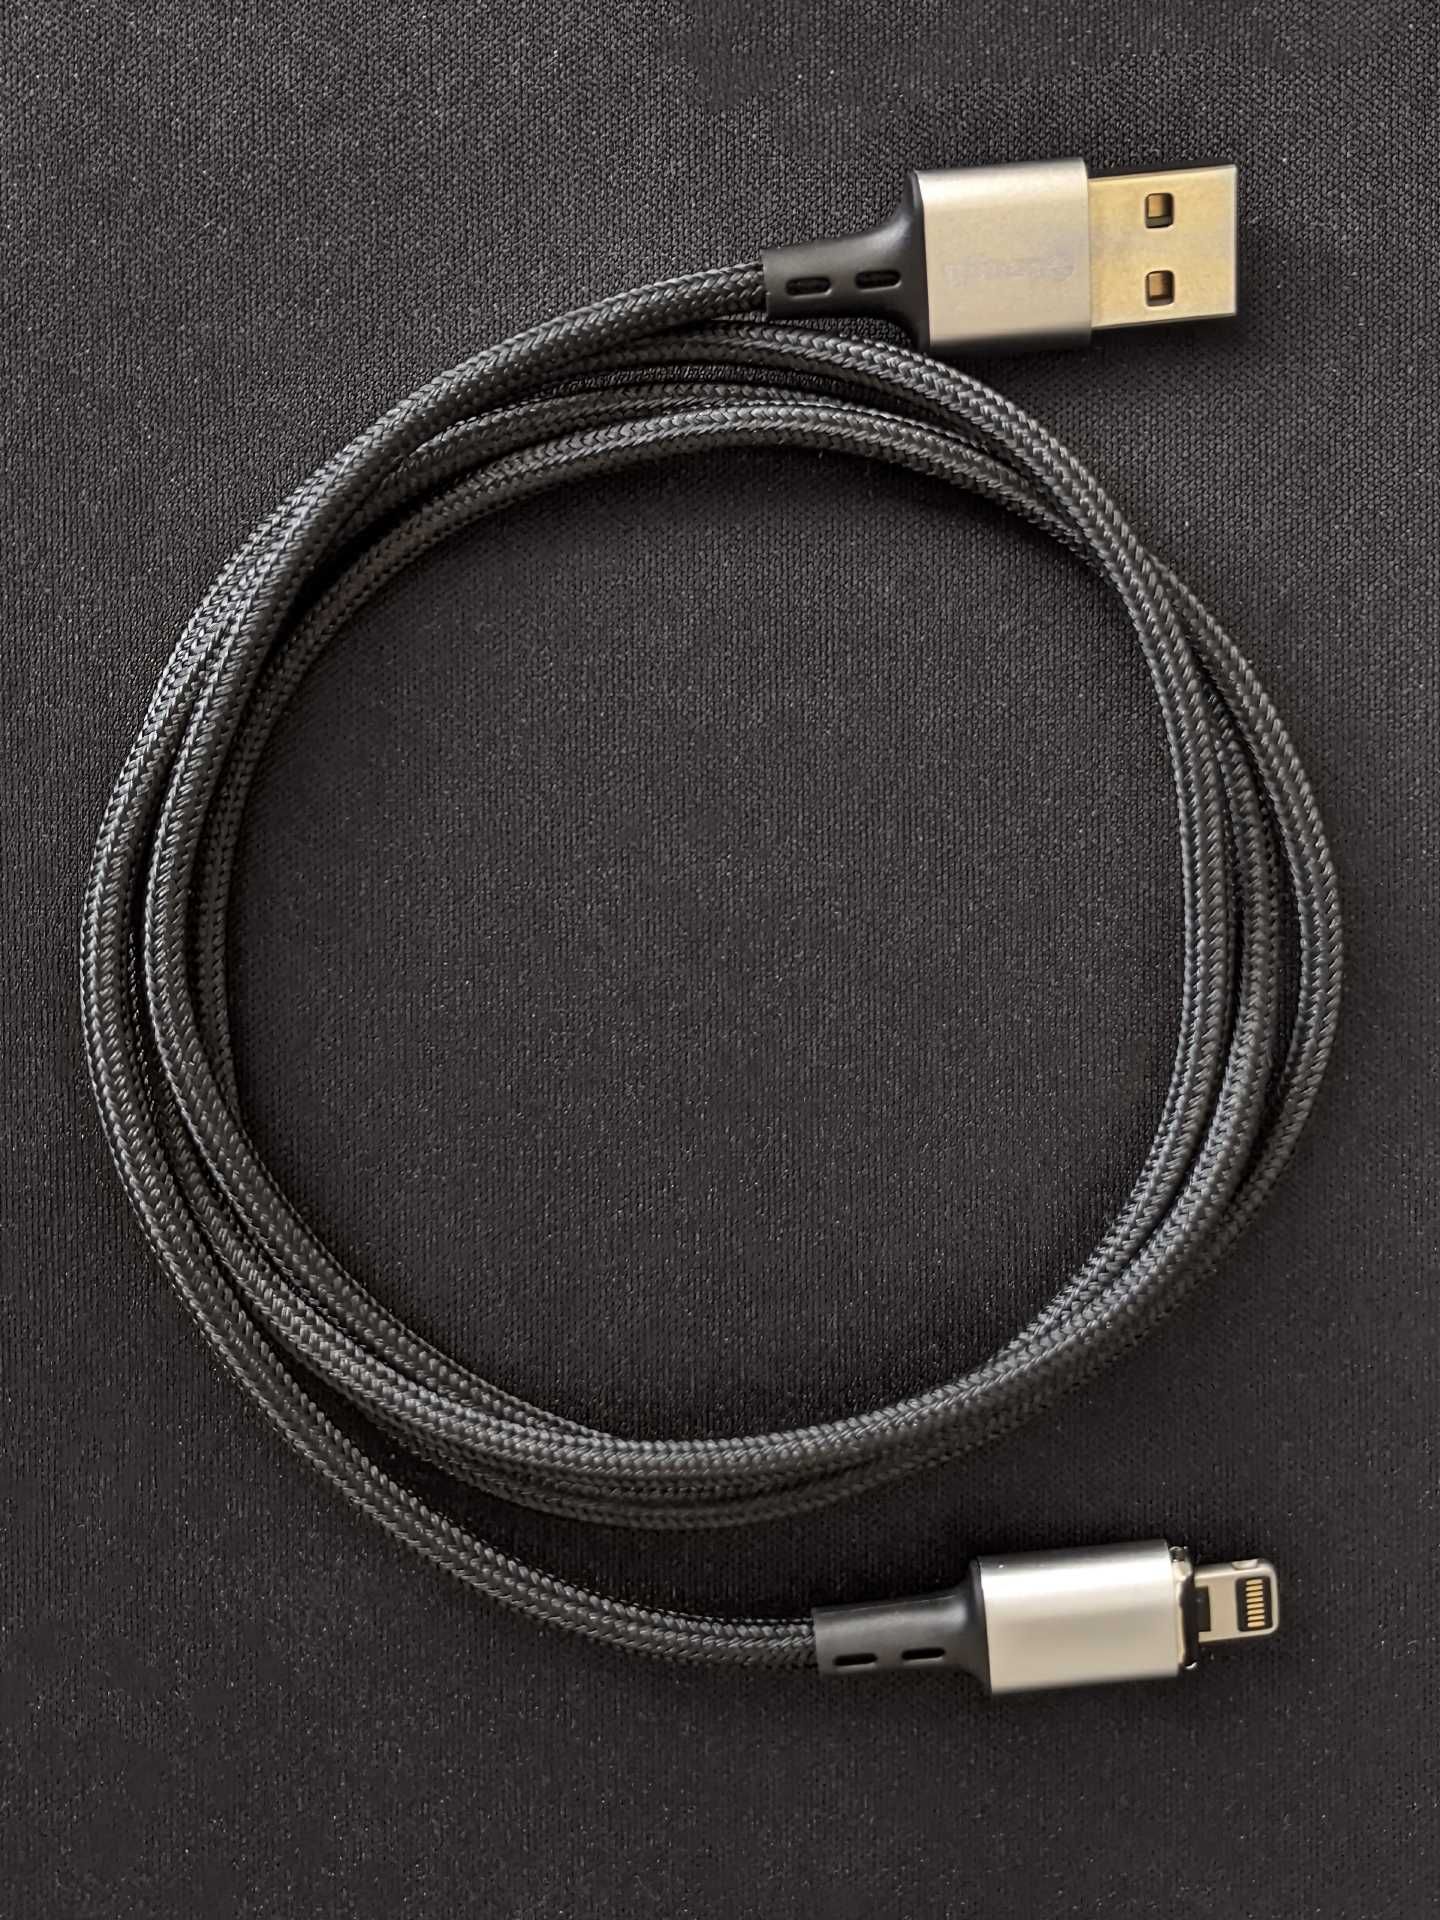 Метровый магнитный кабель Lightning, быстрая зарядка Quick Charge 3.0